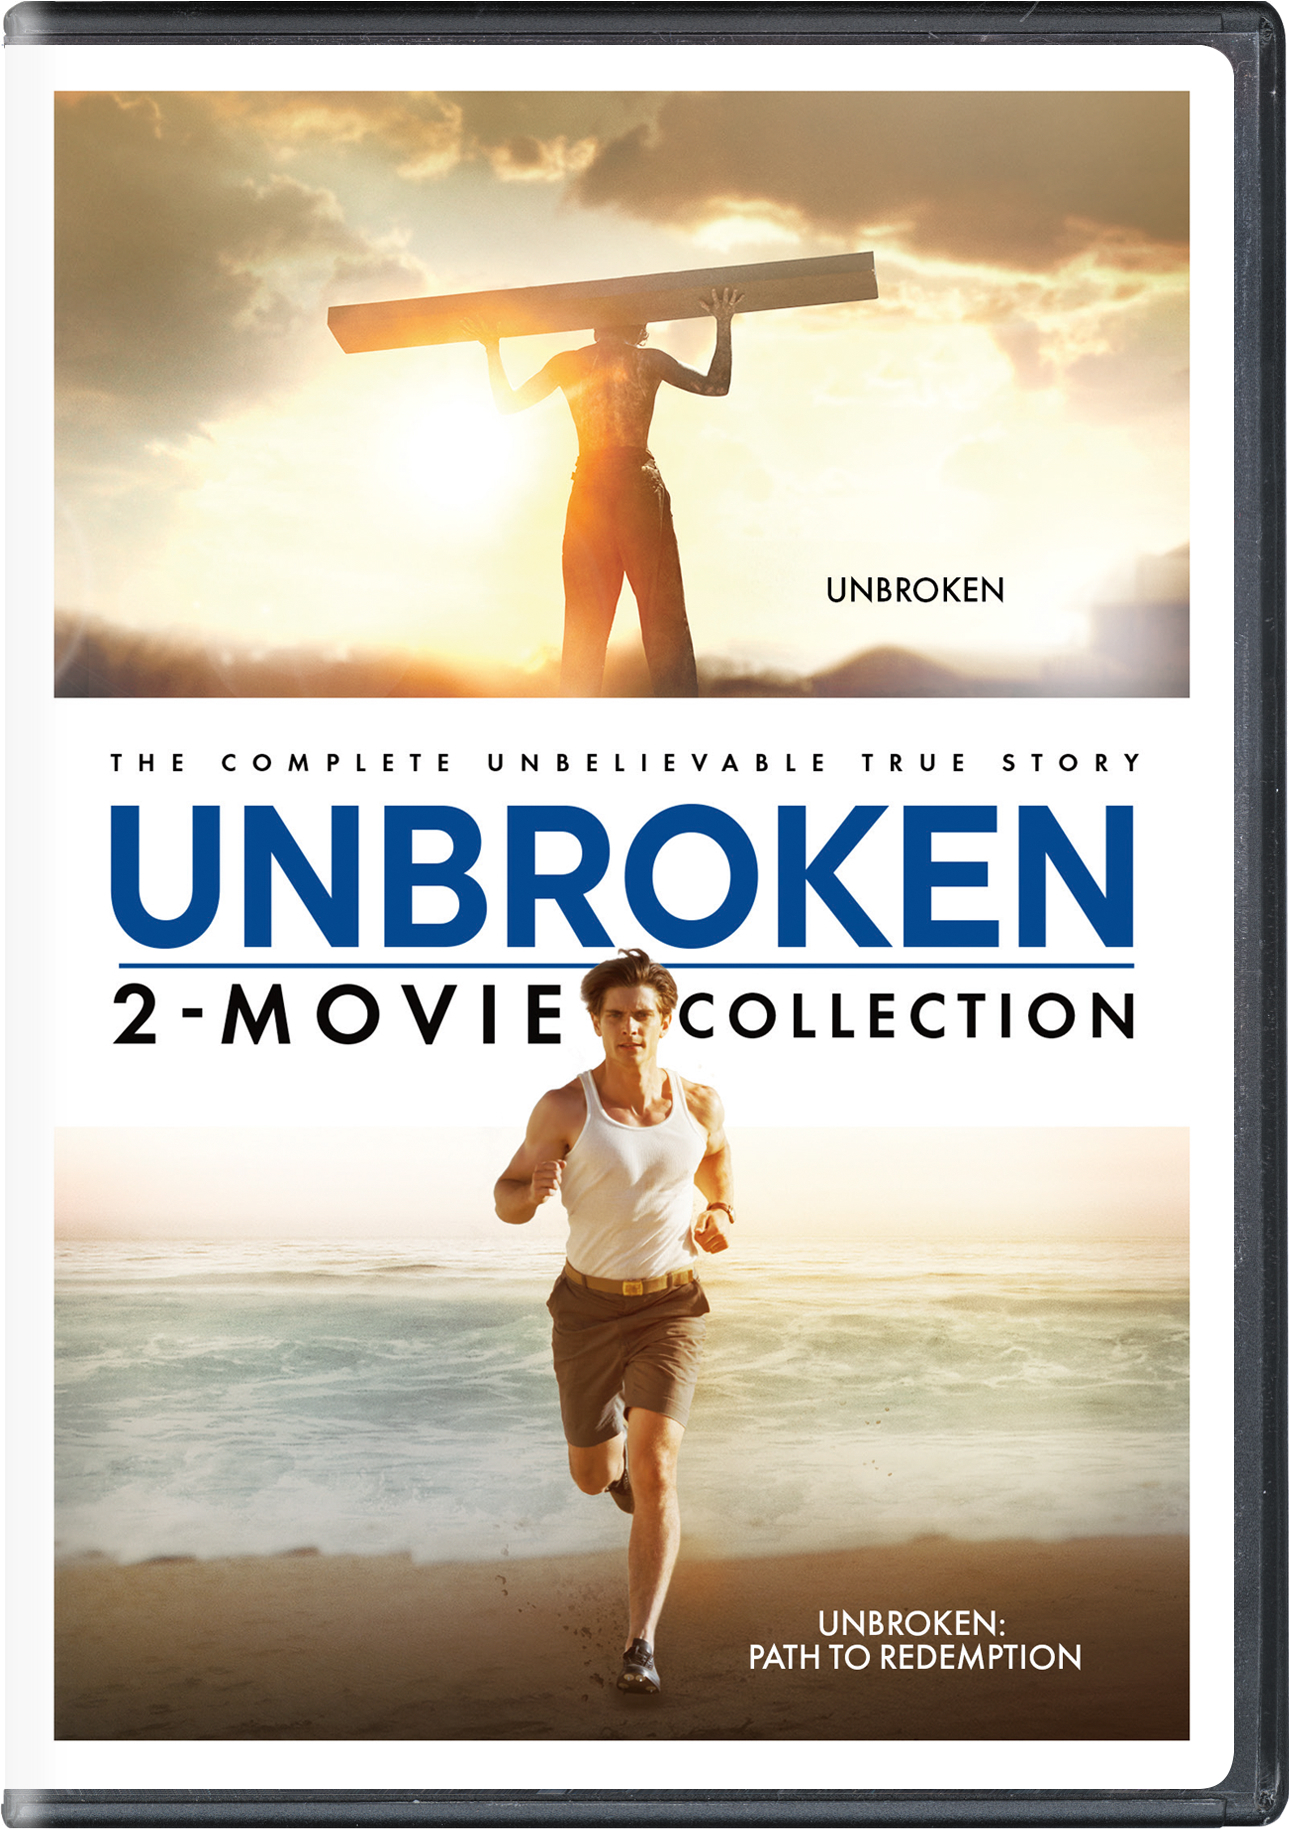 Unbroken/Unbroken - Path To Redemption (DVD Double Feature) - DVD [ 2018 ]  - War Movies On DVD - Movies On GRUV